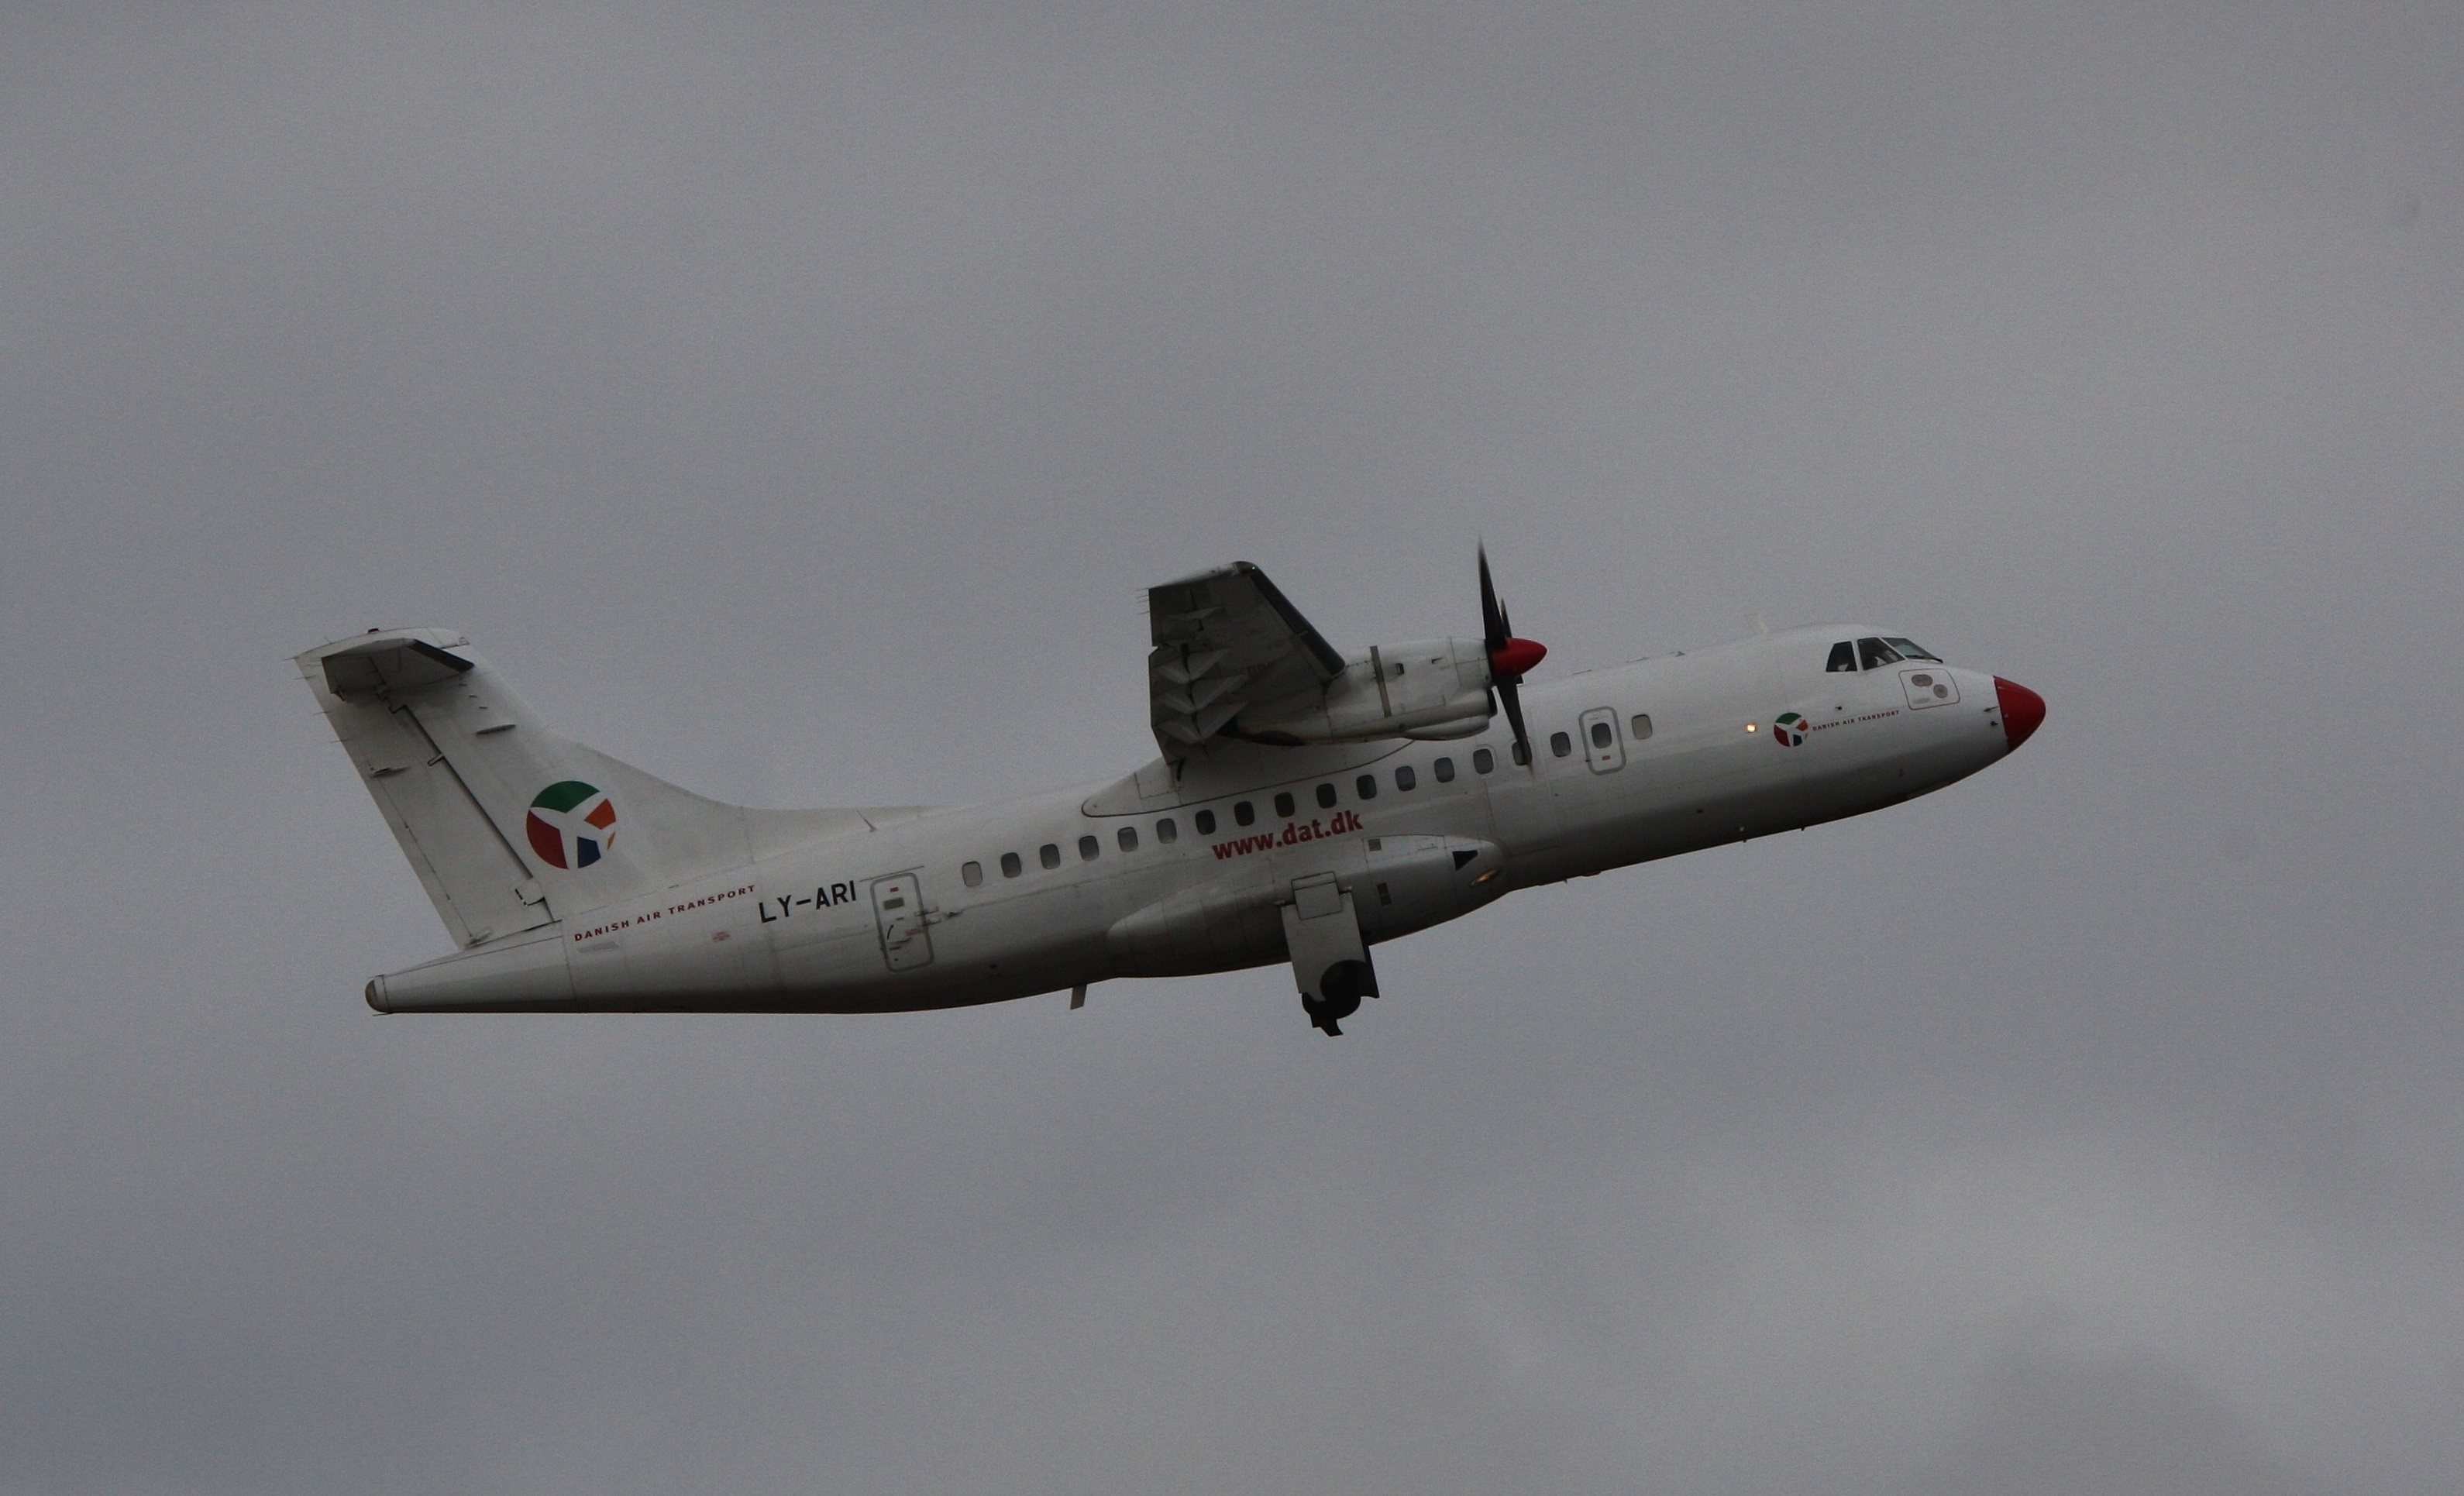 ATR 42 LY-ARI IMG 0094 (8604737388)